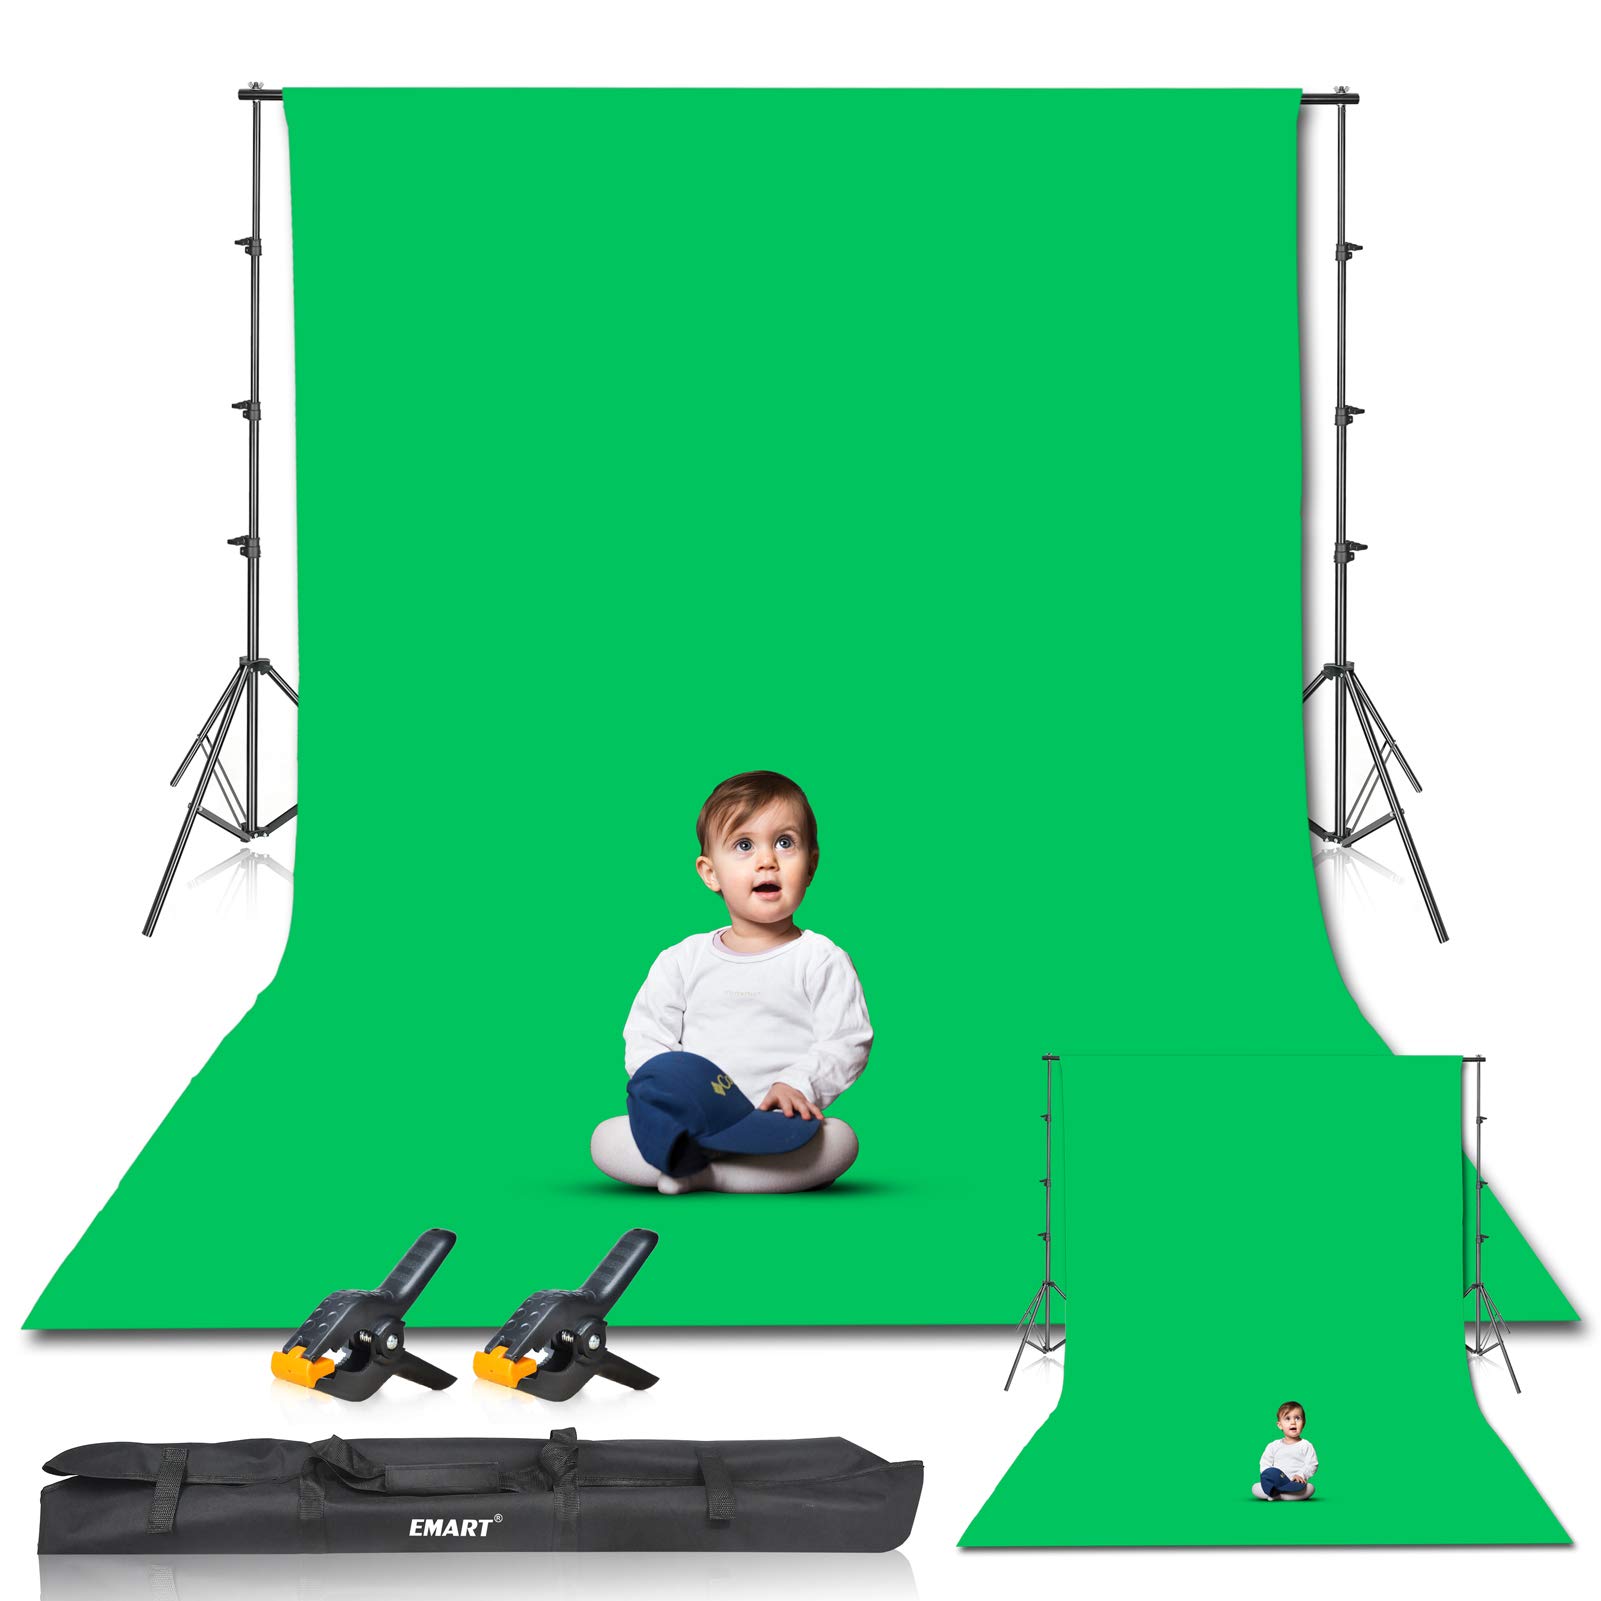 EMART Greenscreen Hintergrund mit Ständer, 2,6x3m Foto Hintergrund Stützsystem, 3X 3,6m Grün Fotohintergrund und 2 Leimzwingen Fotostudio Set für Produkt Porträt YouTube Video Fotografie